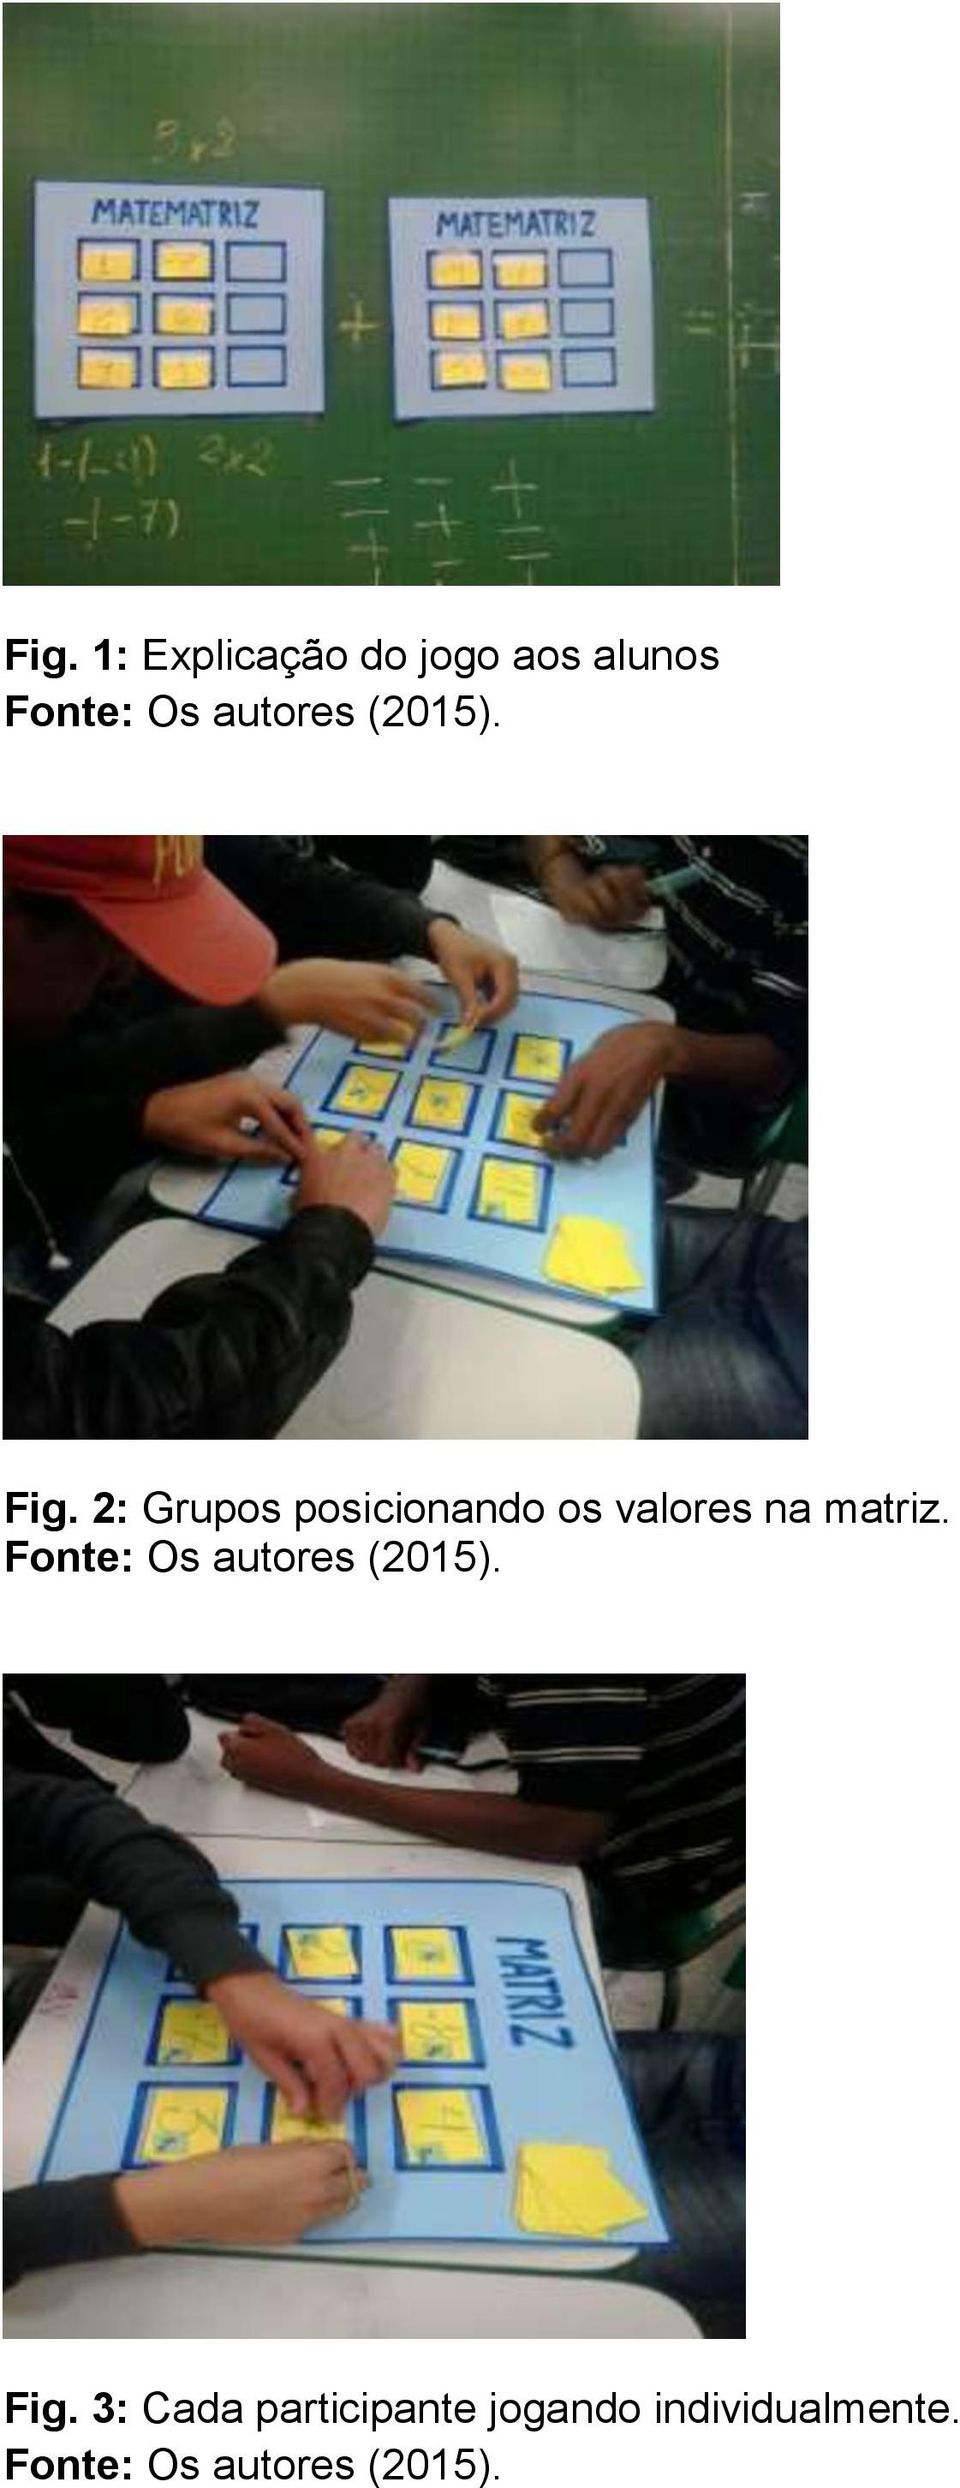 2: Grupos posicionando os valores na matriz.